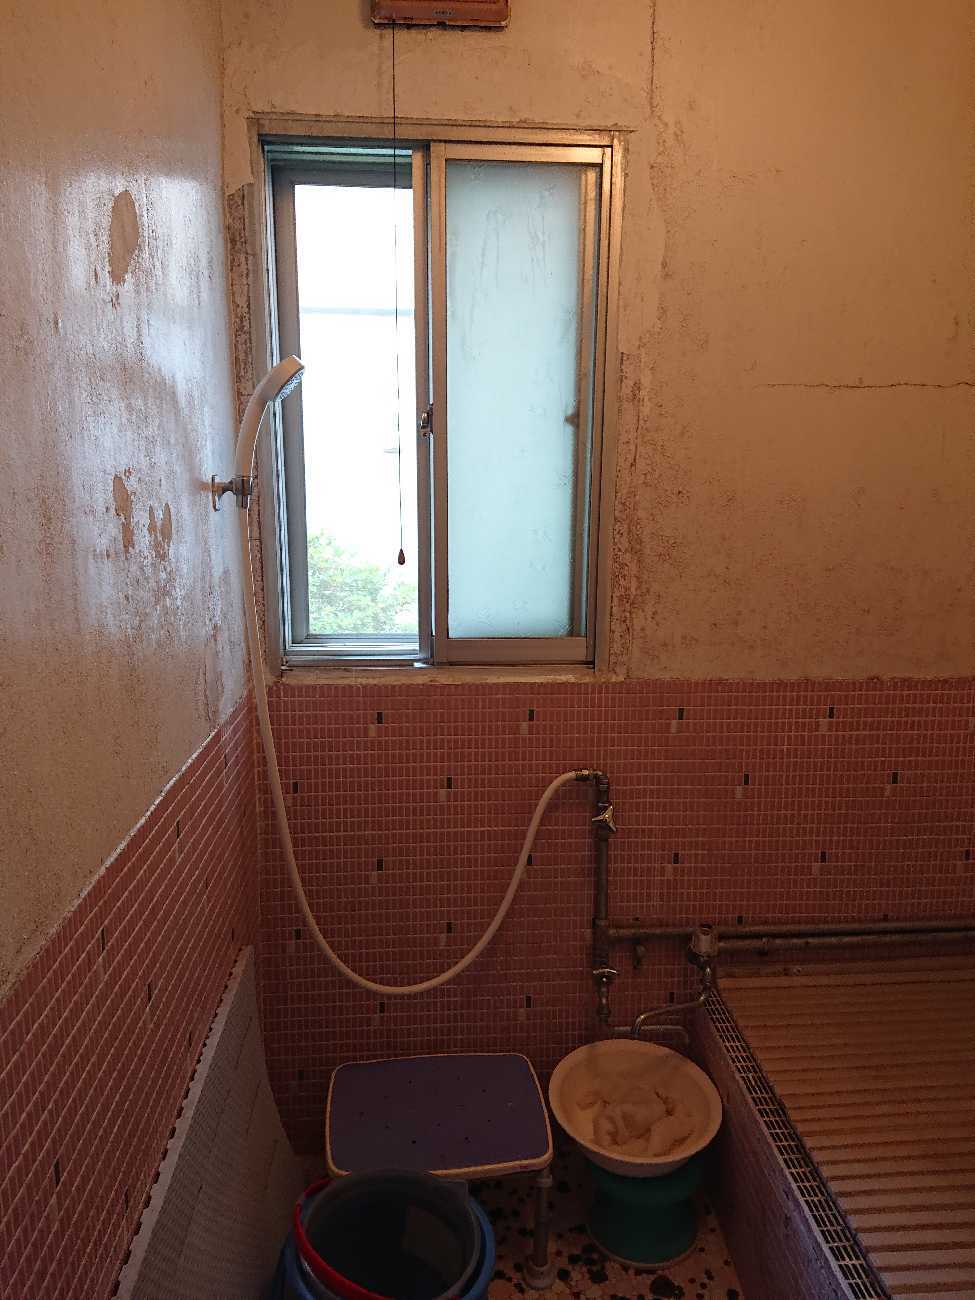 Ｋ様邸浴室改修工事